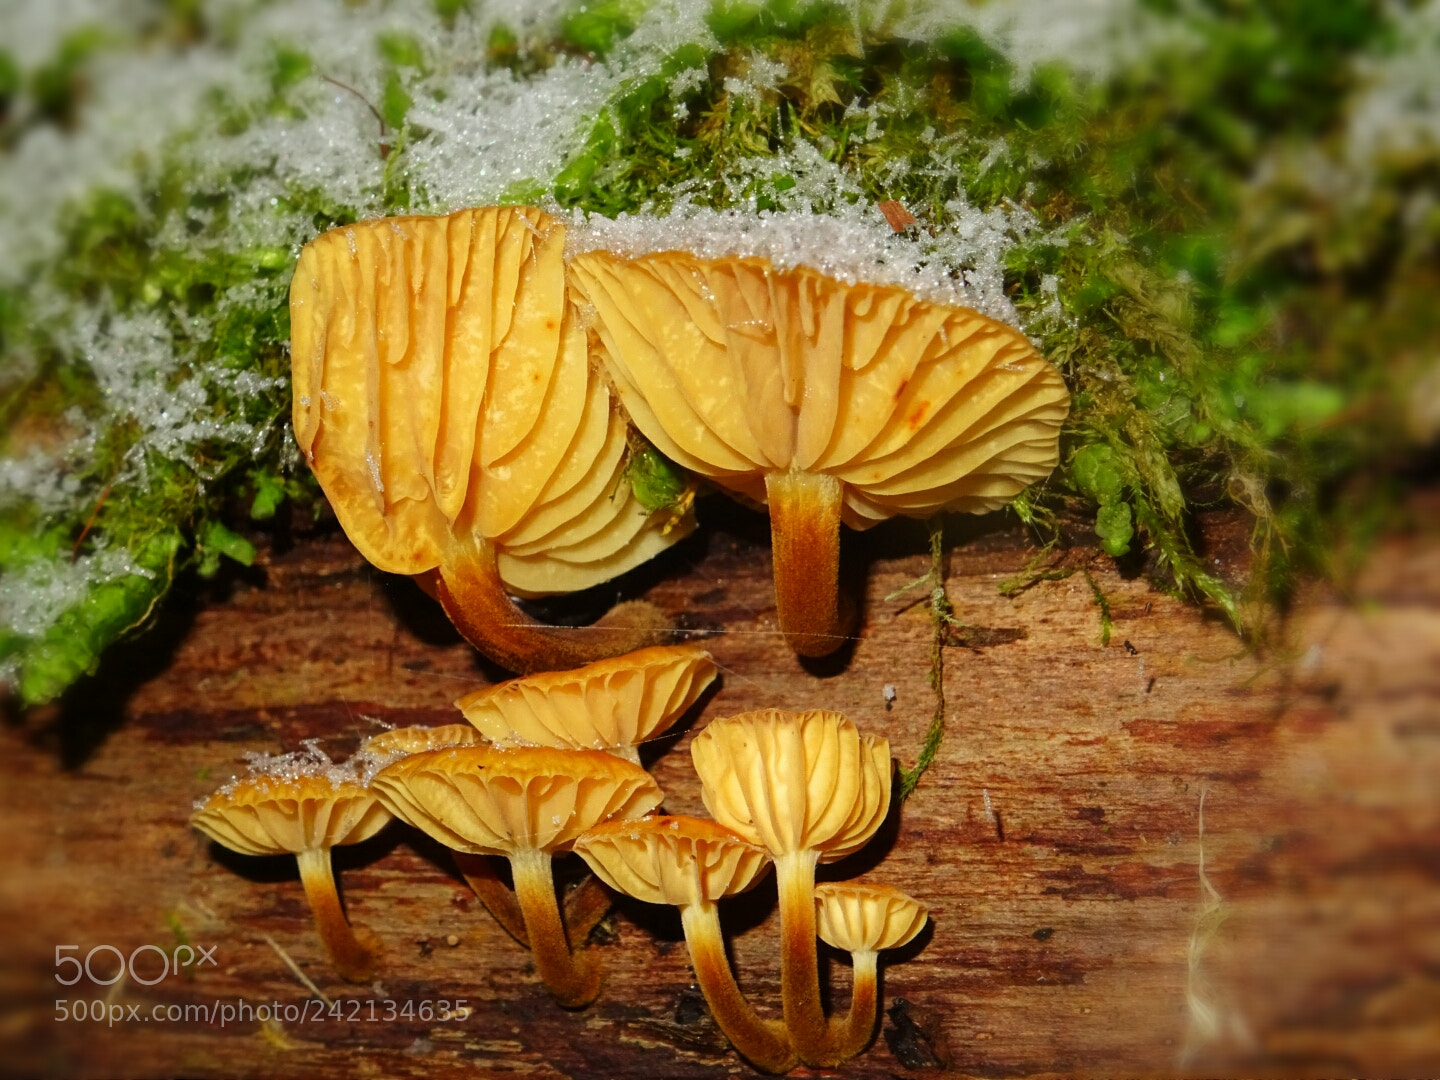 Sony DSC-HX60 sample photo. Mushroom family photography